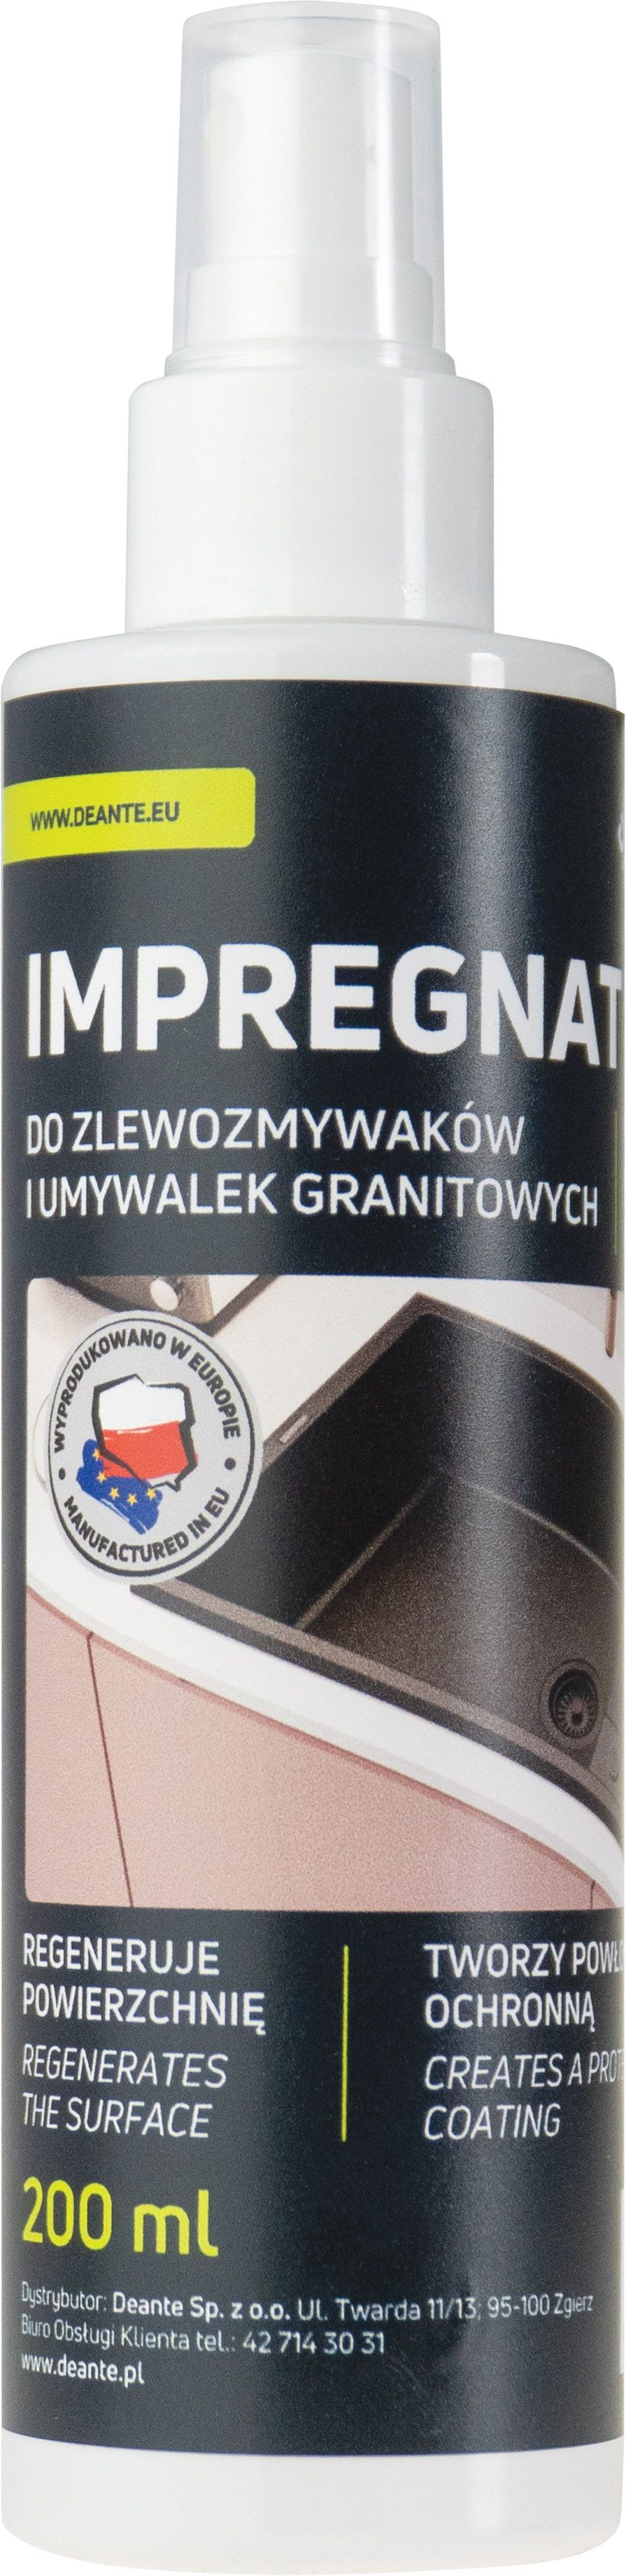 Protecteur, pour les produits en granit - 200 ml - ZZZ_020I - Główne zdjęcie produktowe